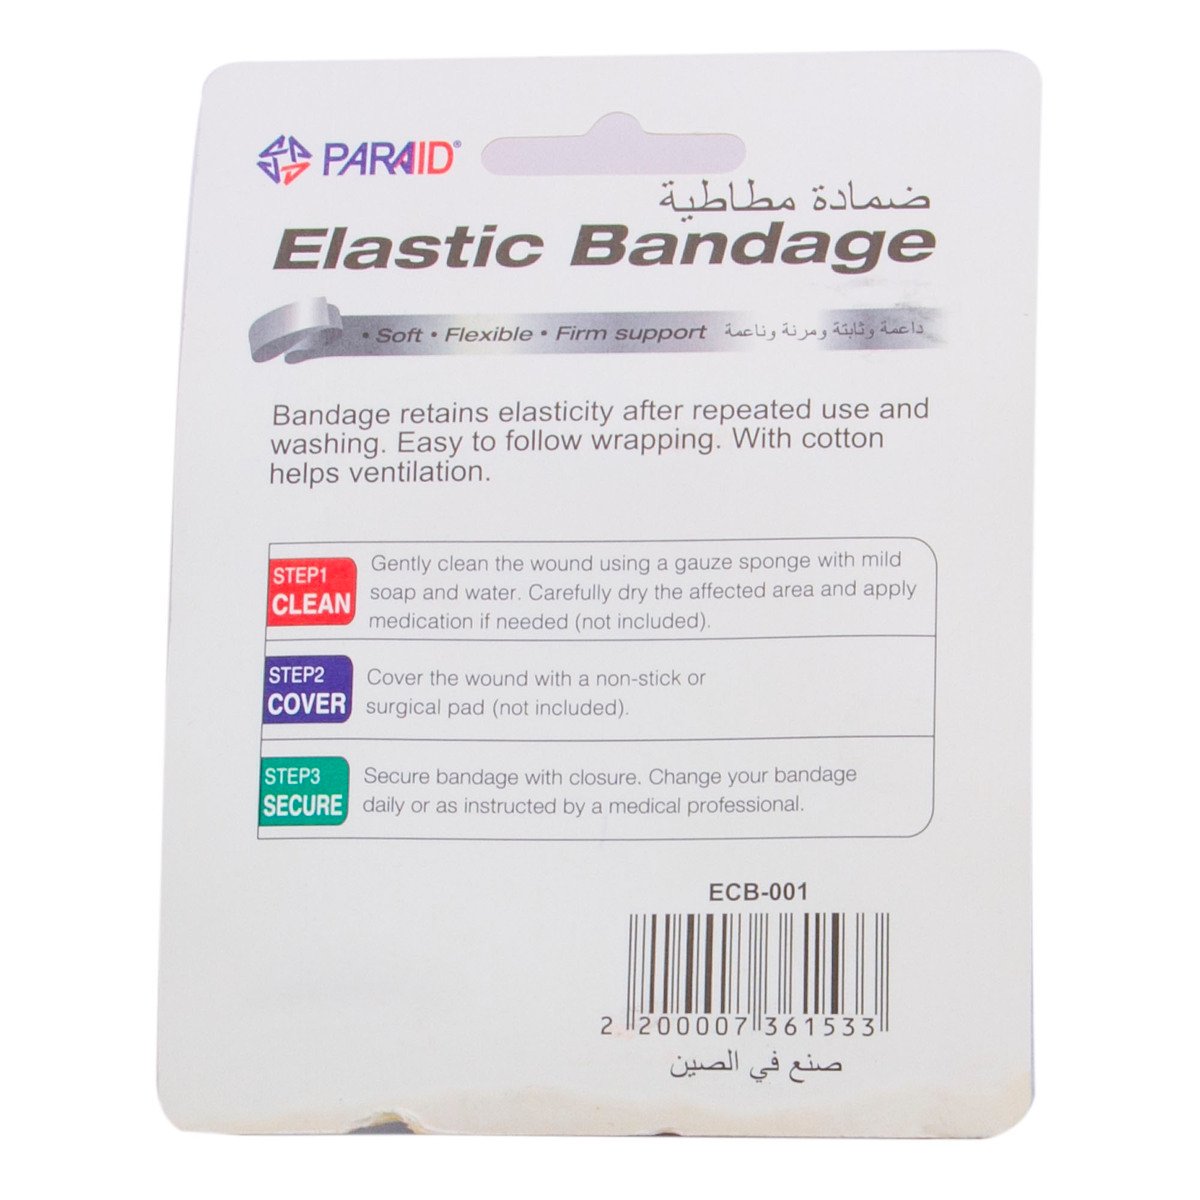 Paraid Elastic Bandage 5cm x 4.75m 1 pc